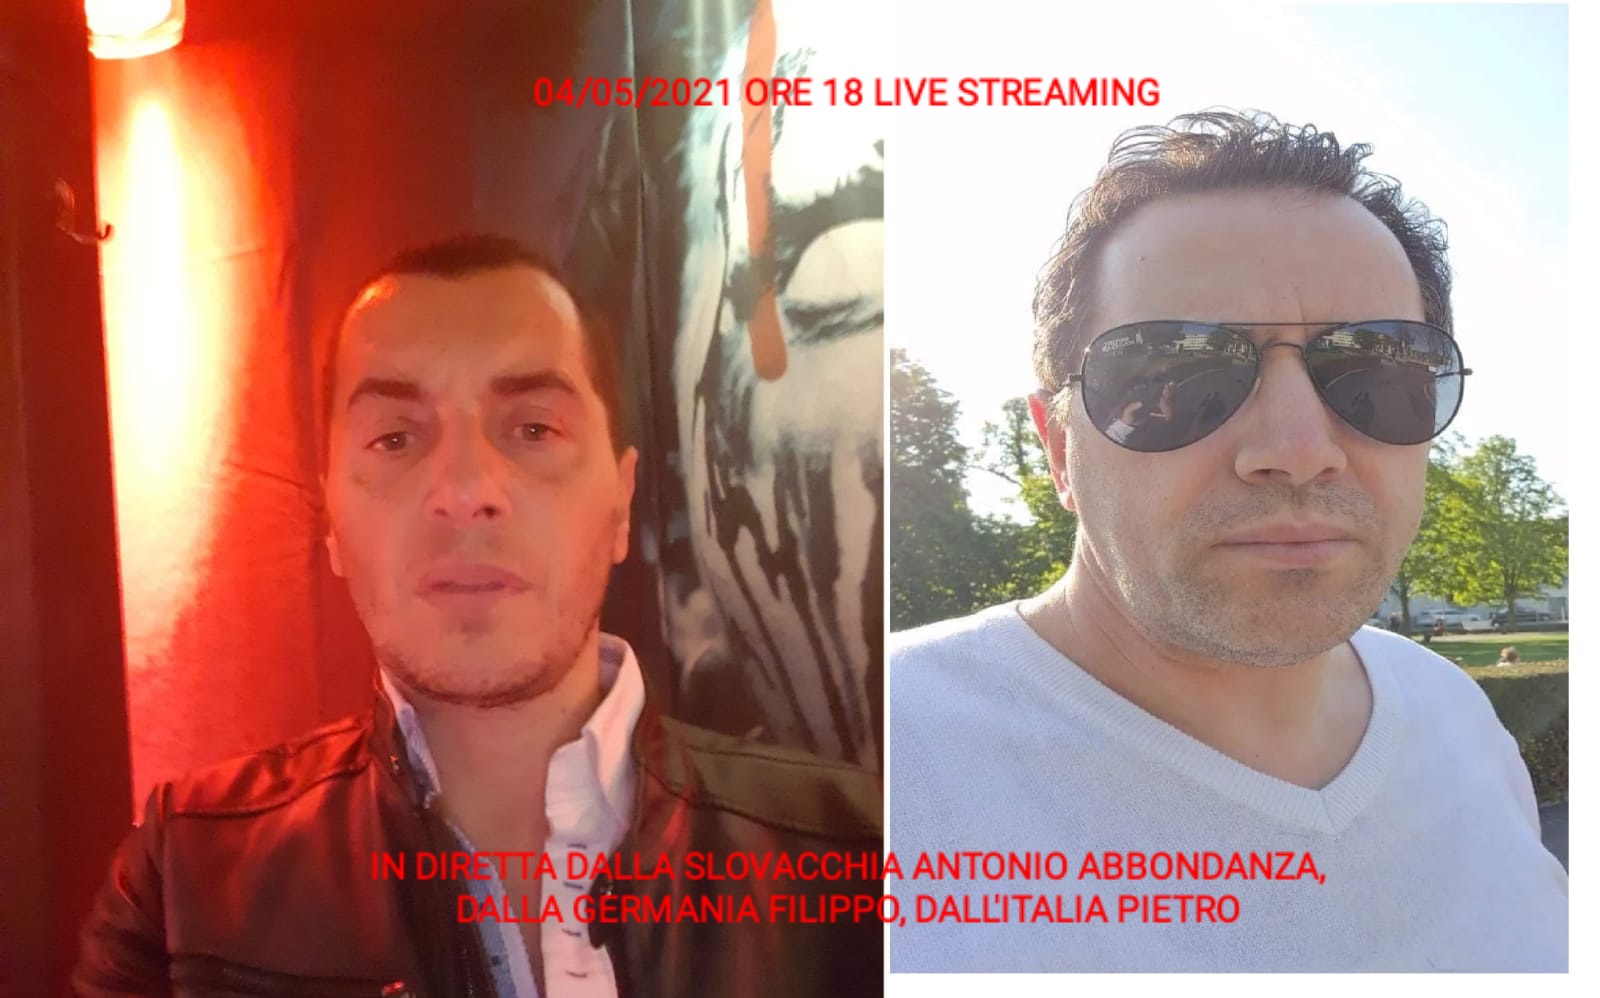 LIVE STREAMING 04/05/2021 ORE 18:00 GERMANIA (Filippo) - SLOVACCHIA (Antonio Abbondanza) - ITALIA (Pietro) PARTE 2